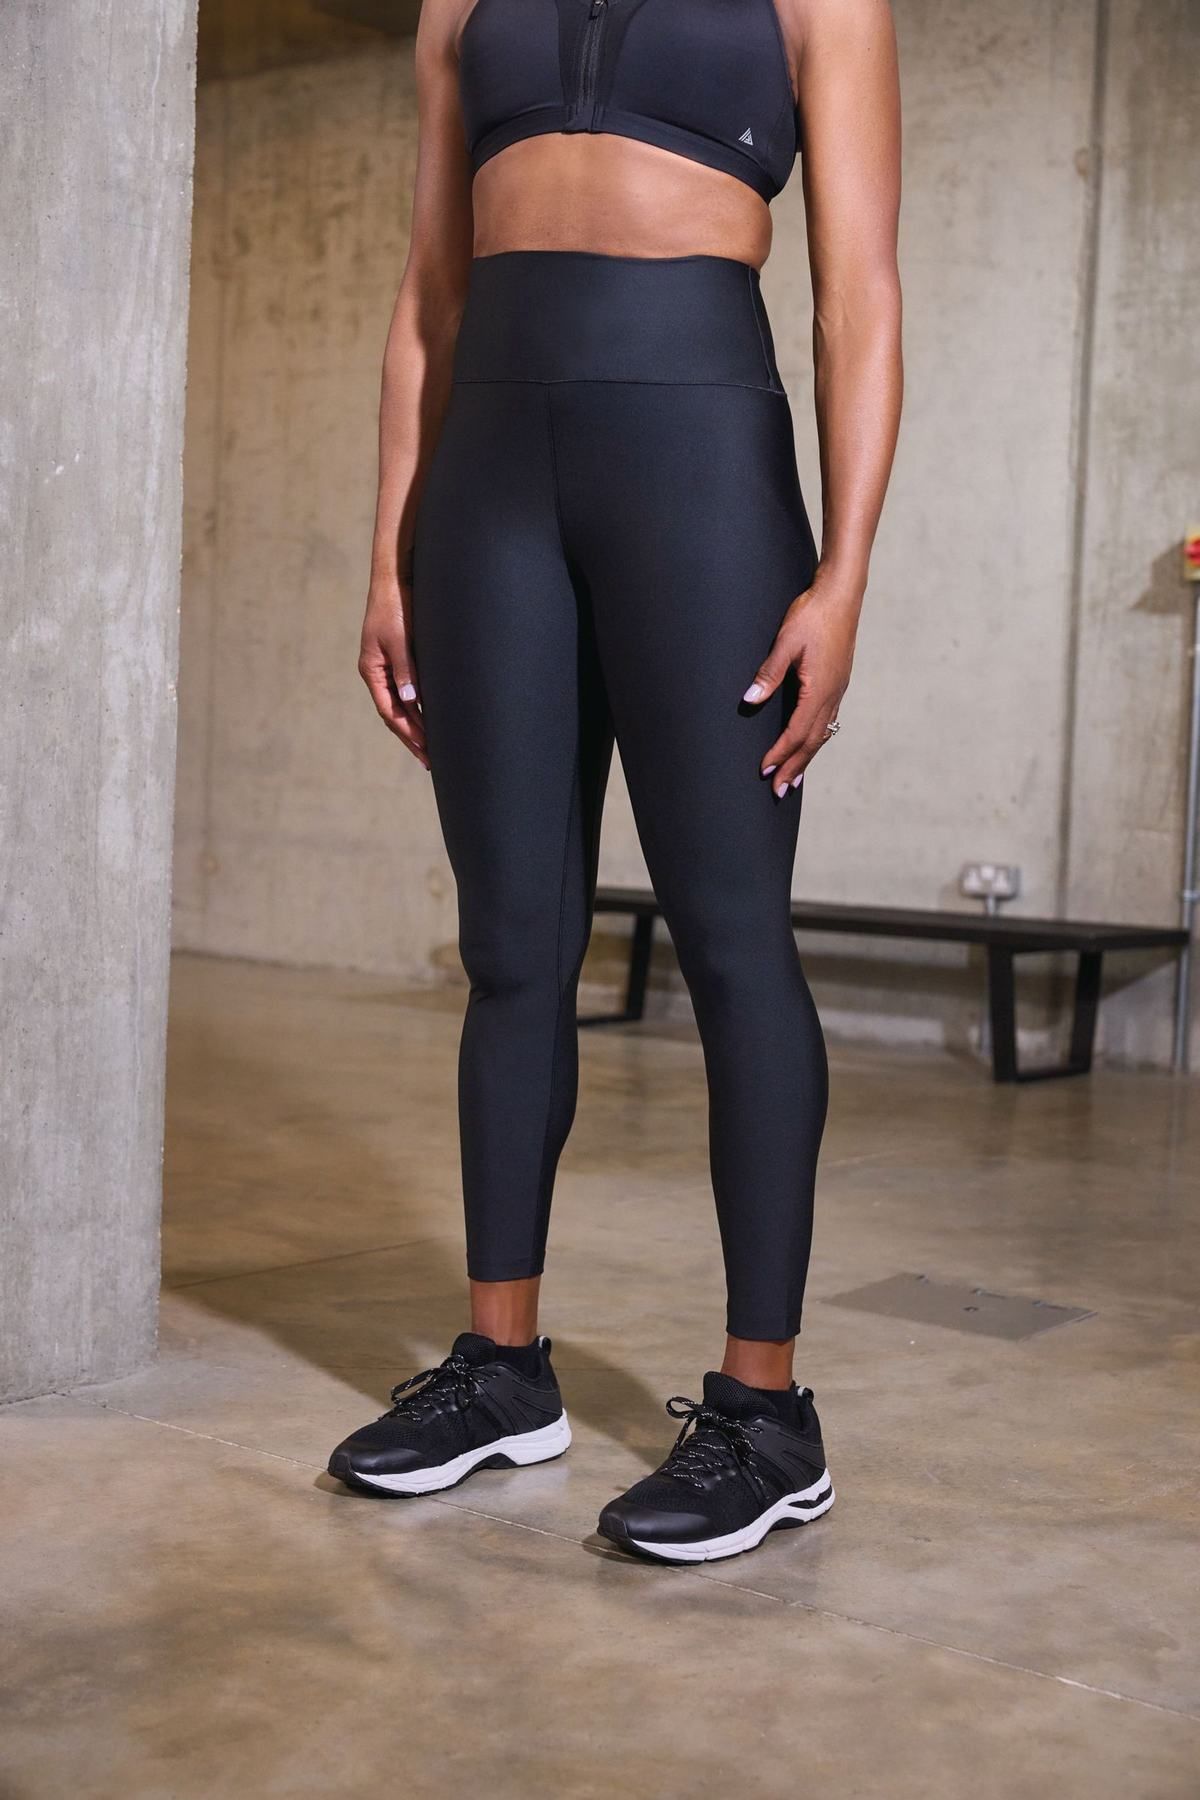 Sports leggings for women, shaping, sculpting sports leggings for